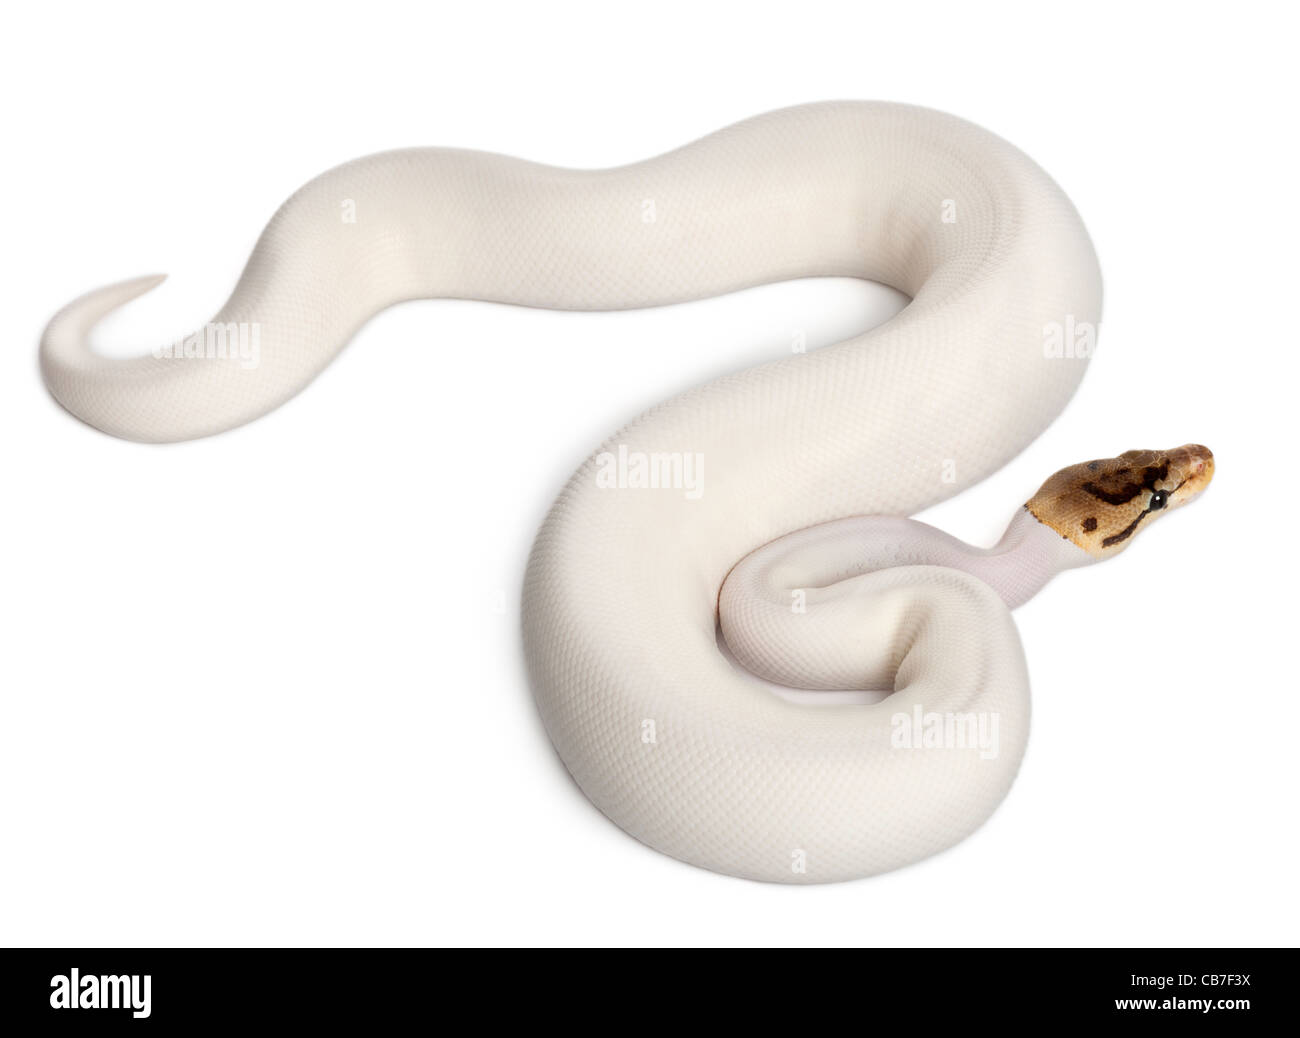 Hembra pied spider Royal python, Python regius, de 18 meses, delante de un fondo blanco Foto de stock